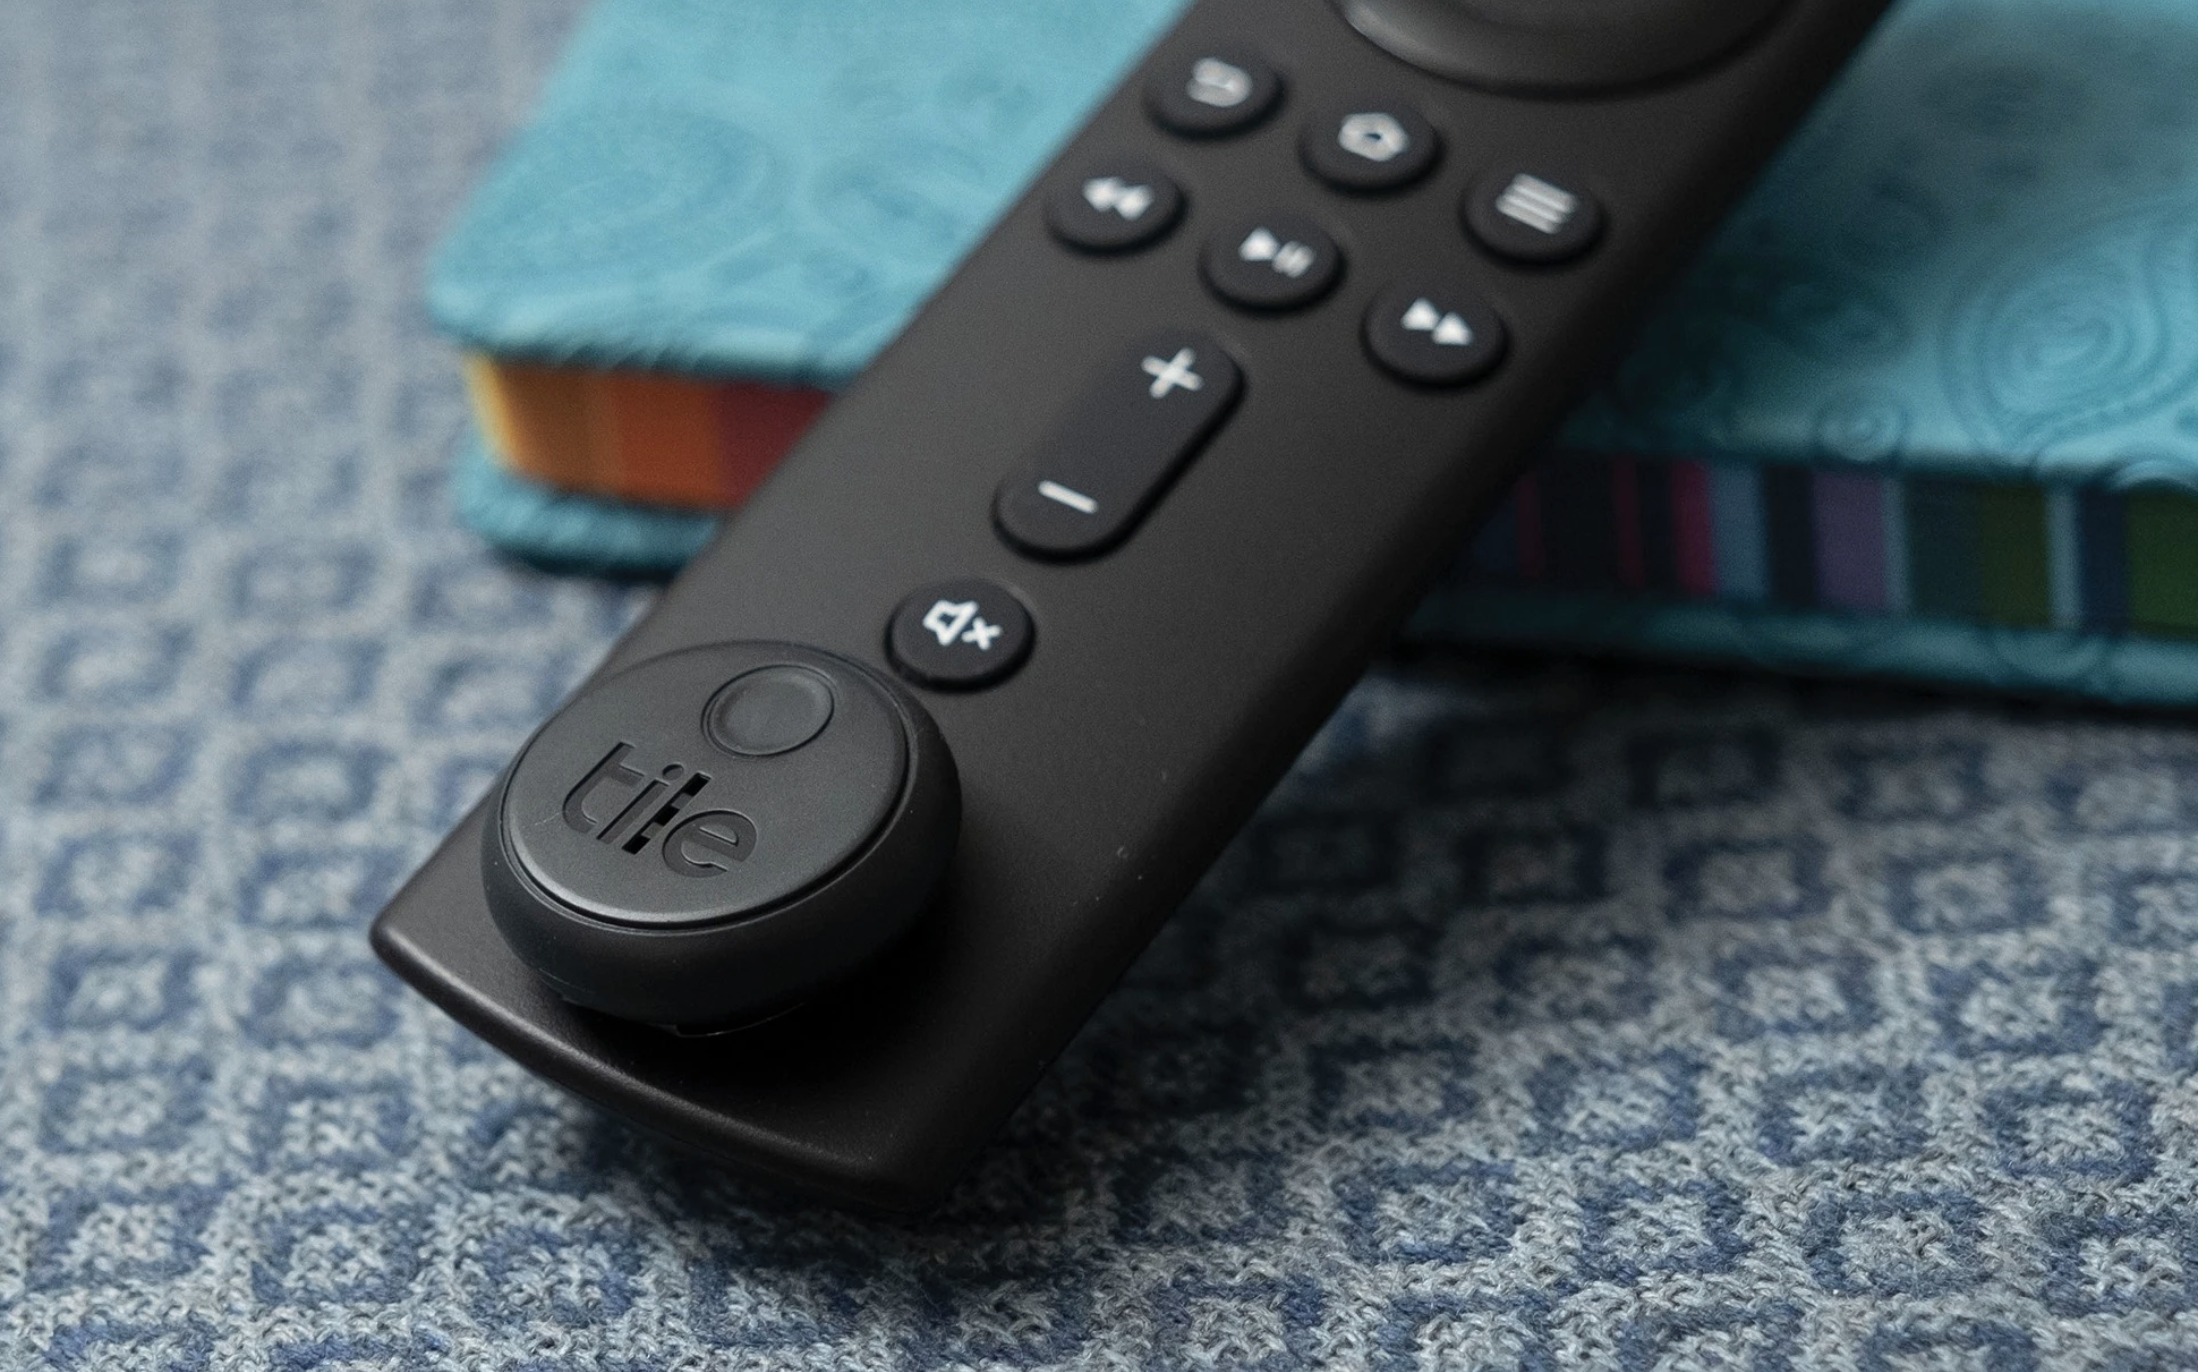 Tile Sticker on Apple TV remote